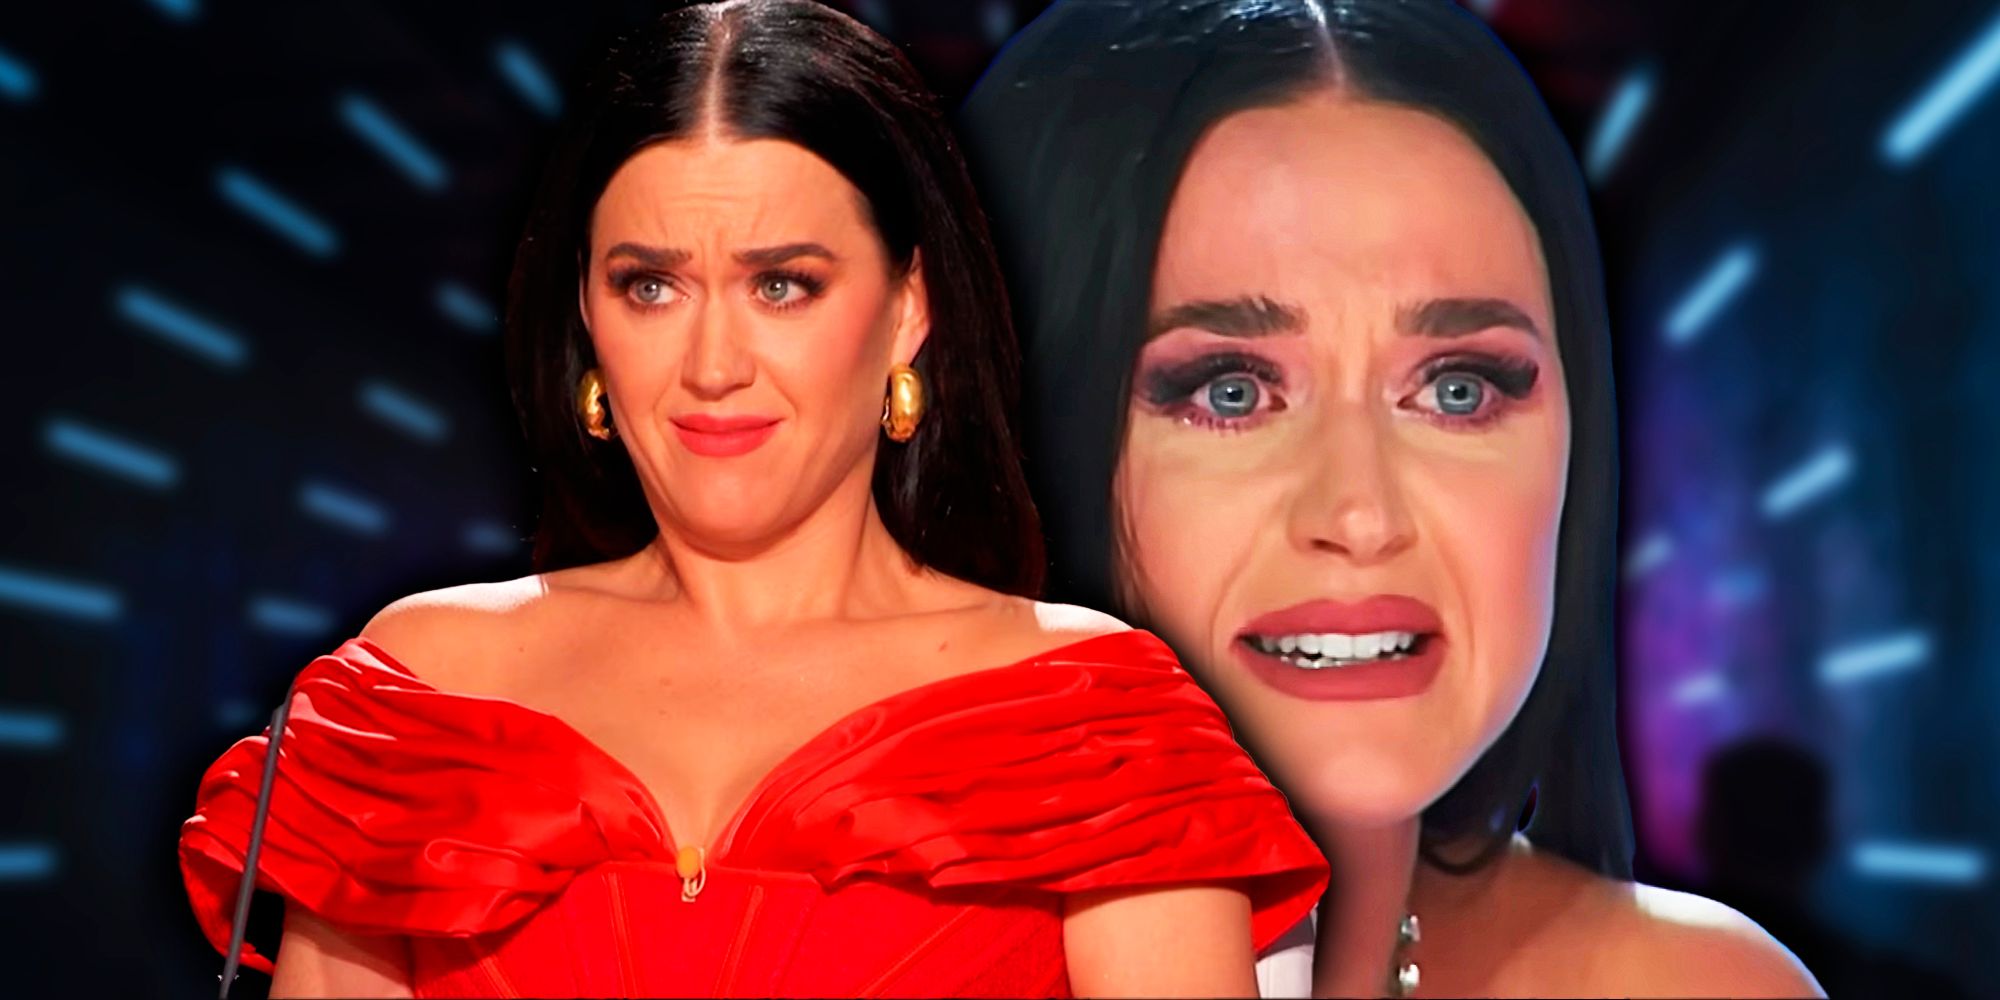 Se revela la emotiva primera audición de la temporada 22 de American Idol cuando Katy Perry rompe a llorar